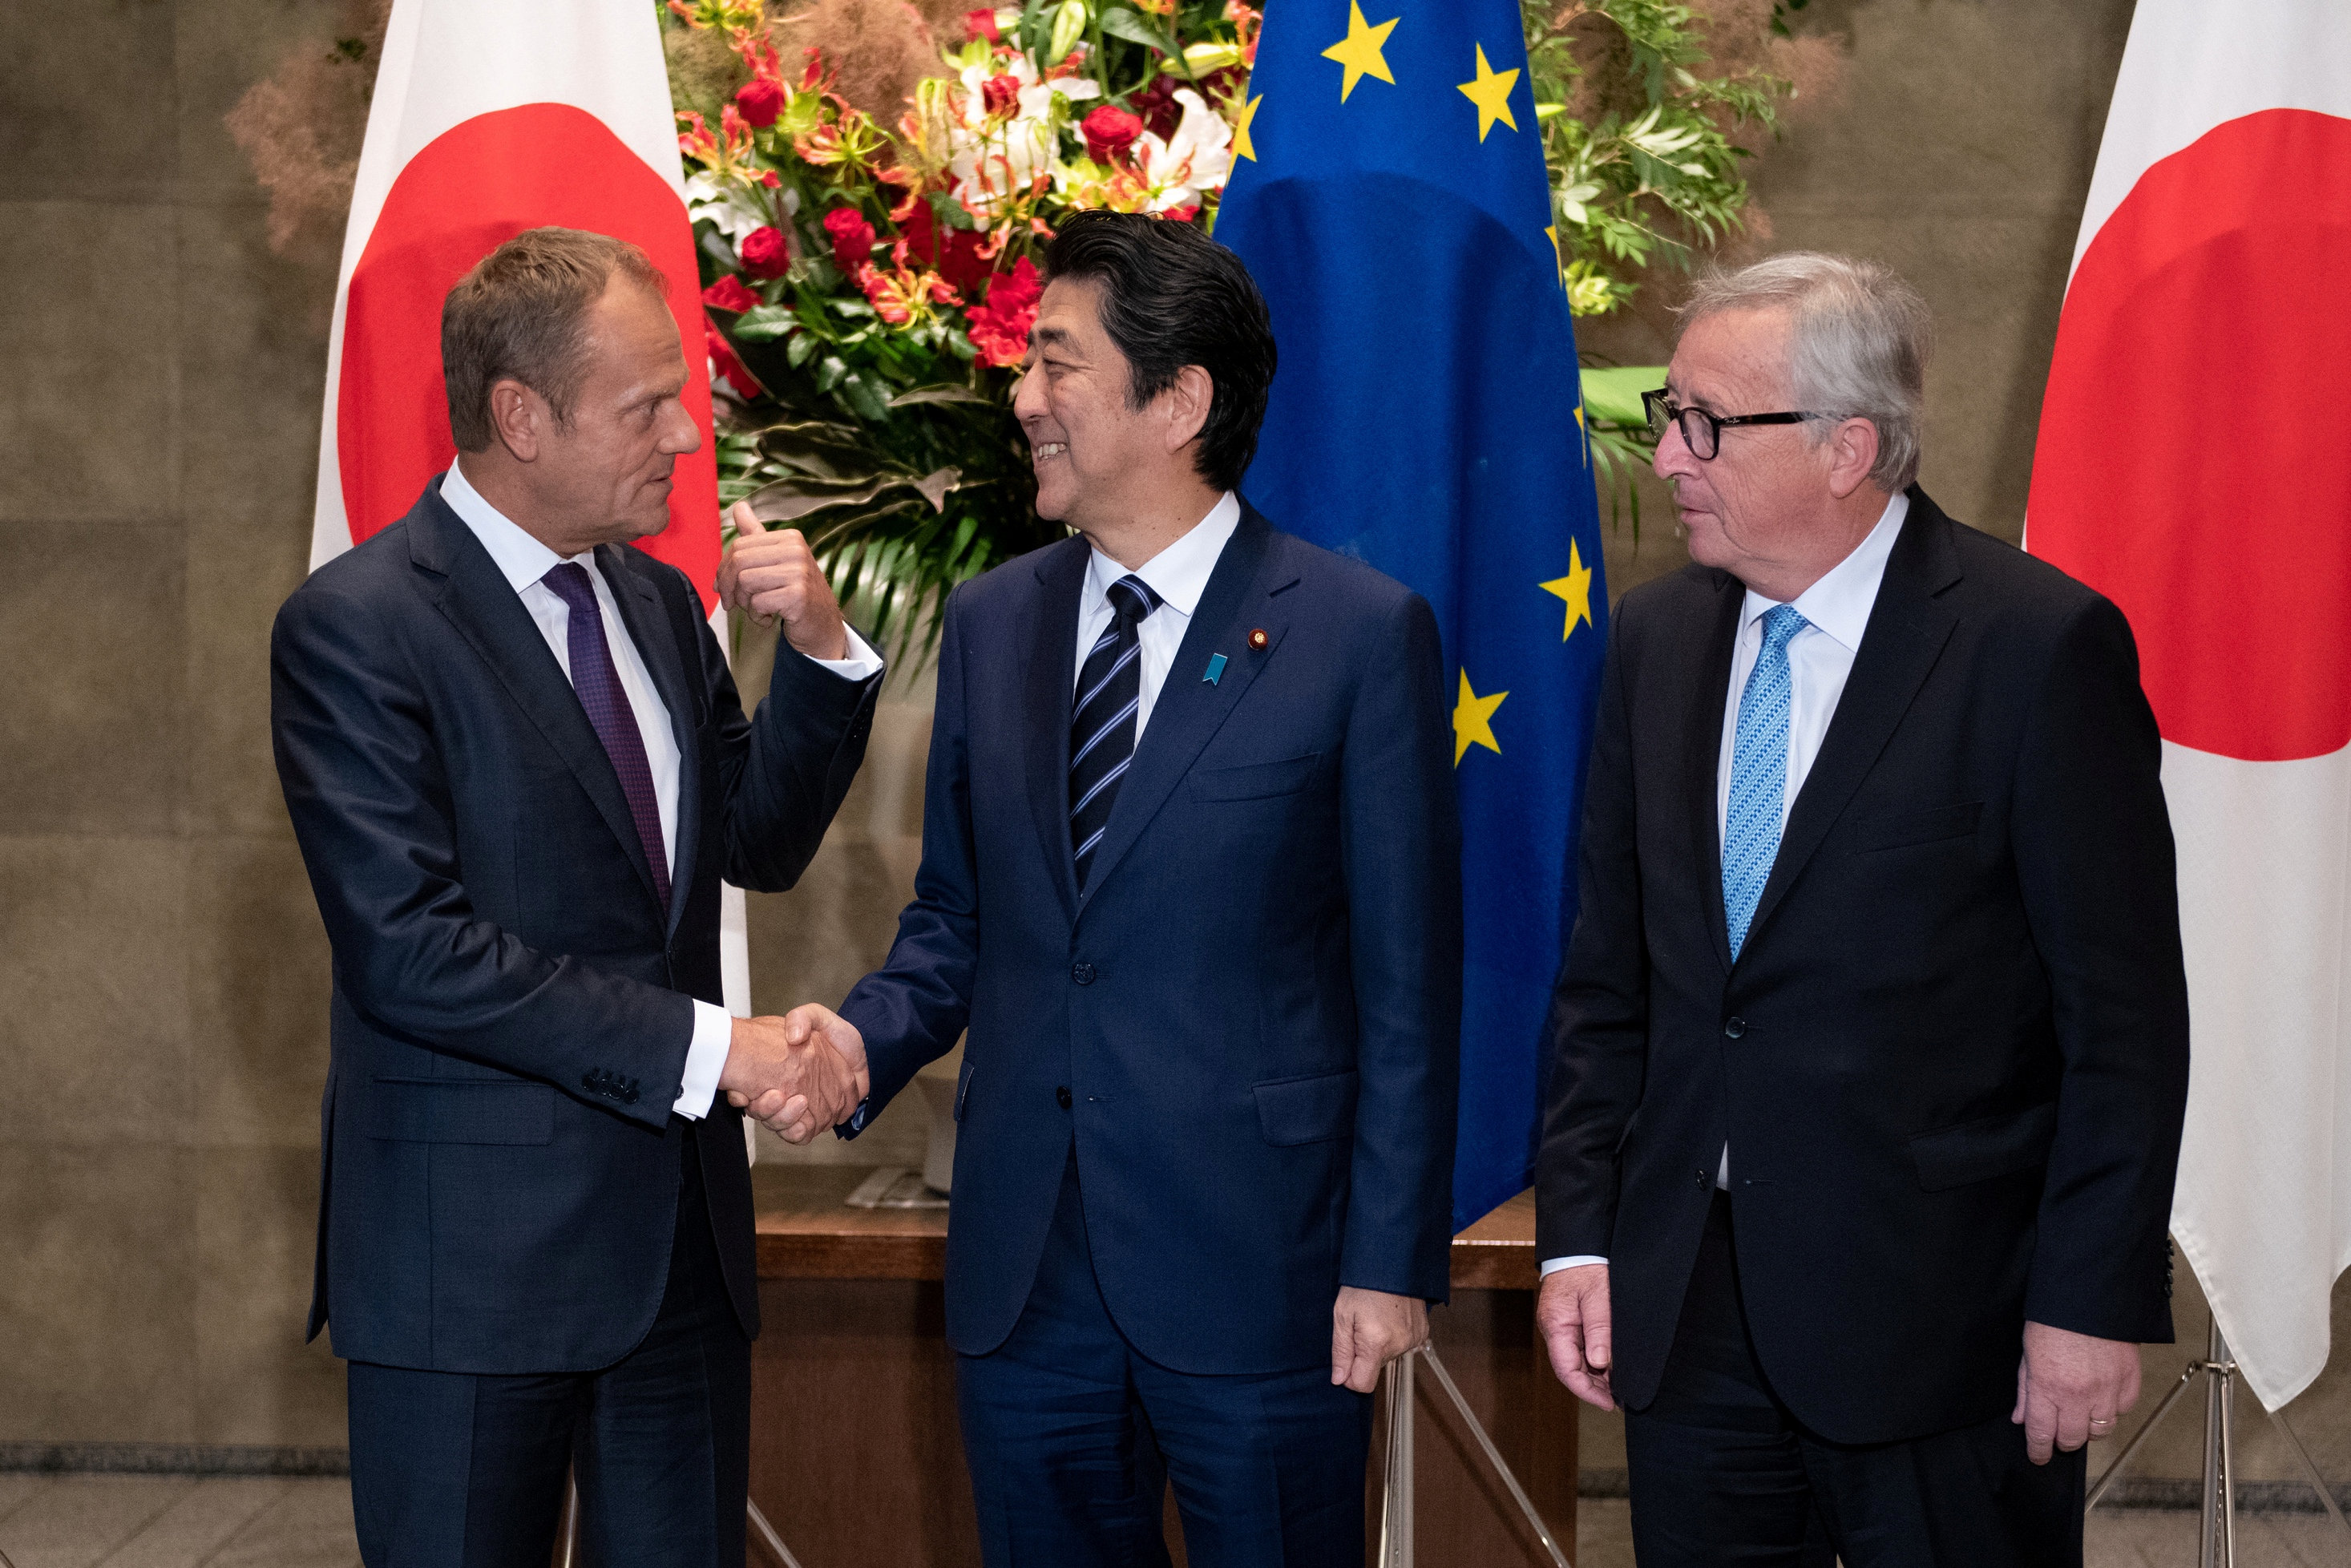 رئيس وزراء اليابان يصافح دونالد توسك